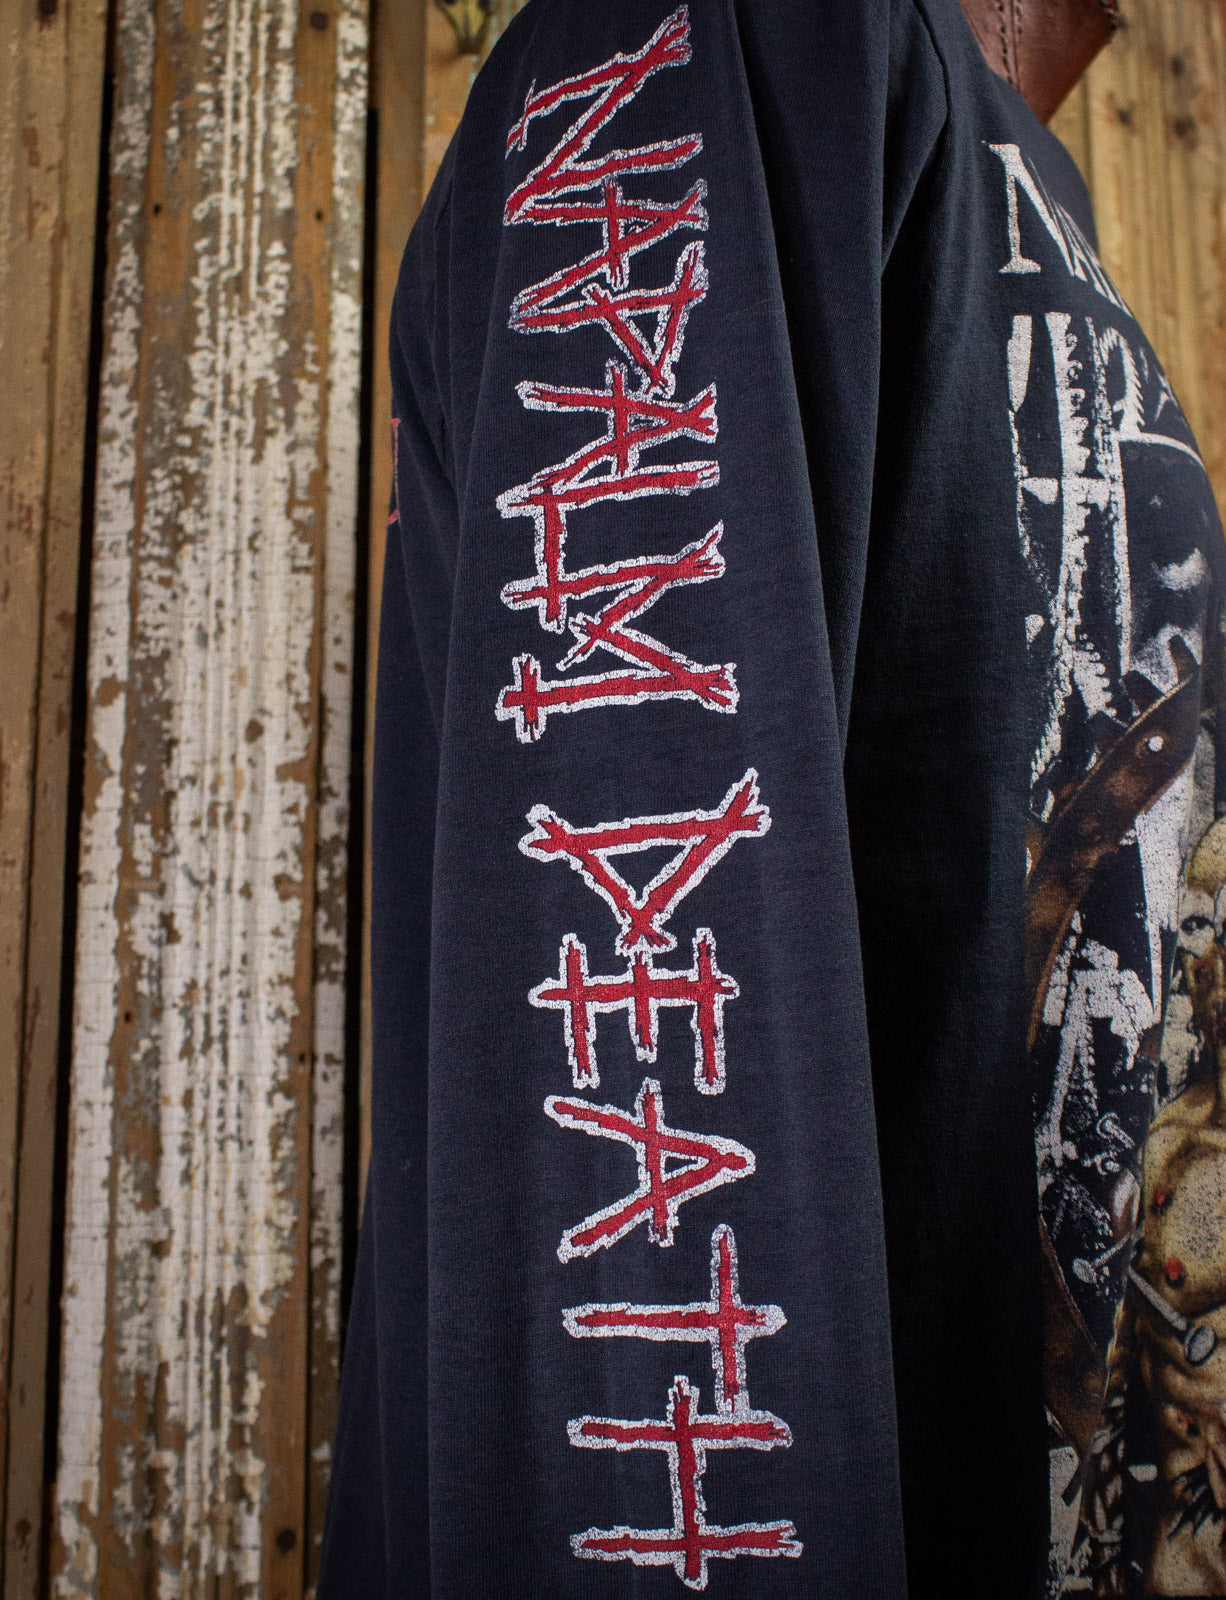 Vintage Napalm Death Campaign for Musical Destruction Concert T Shirt Long Sleeve 1992 Black XL